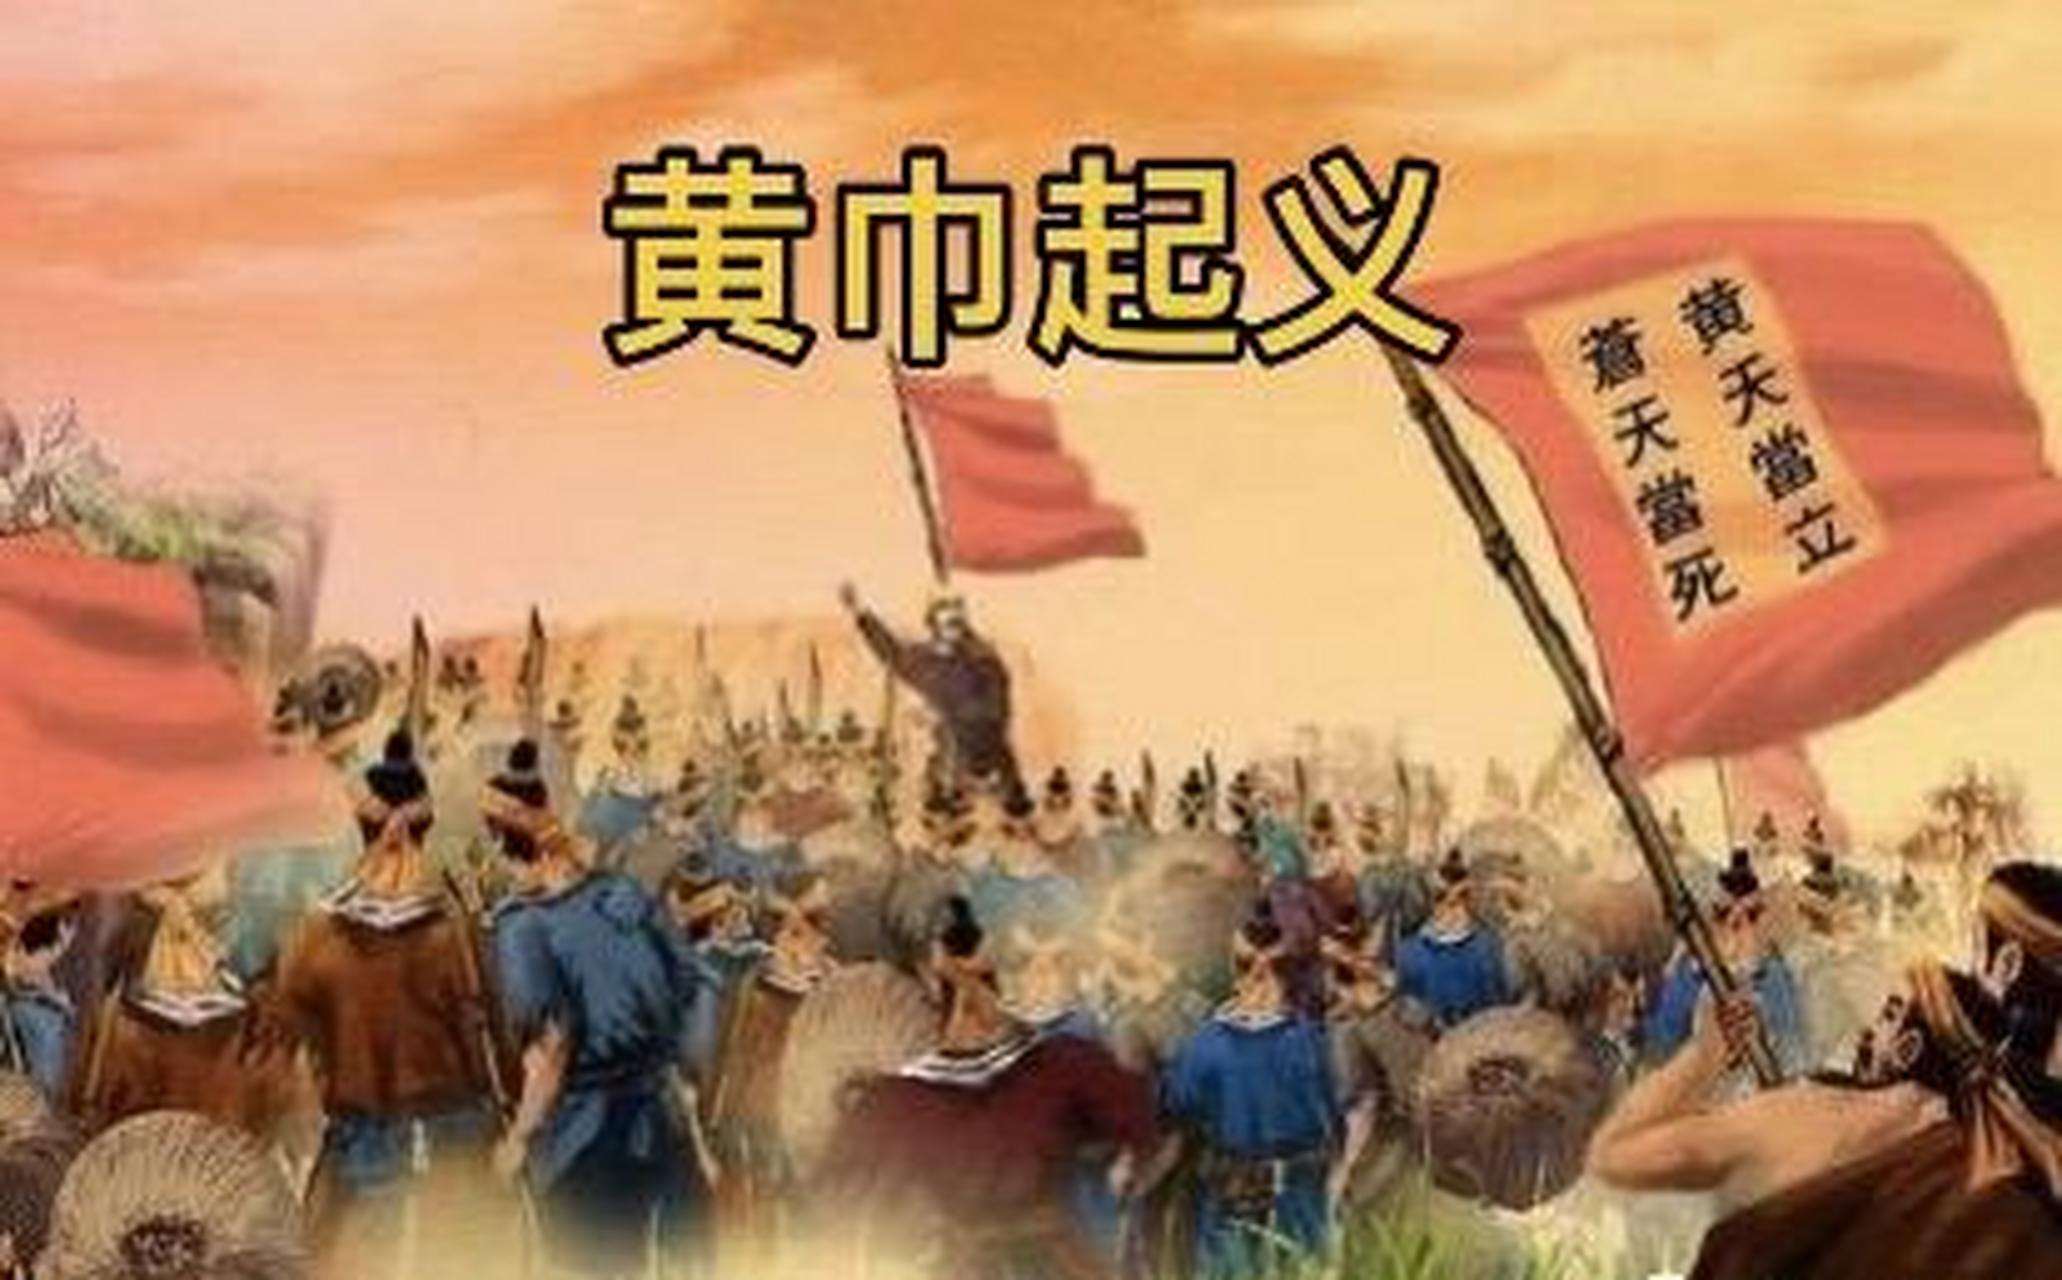 东汉末年的黄巾起义,可以说是三国  时代很多大佬得以事业成功的一个